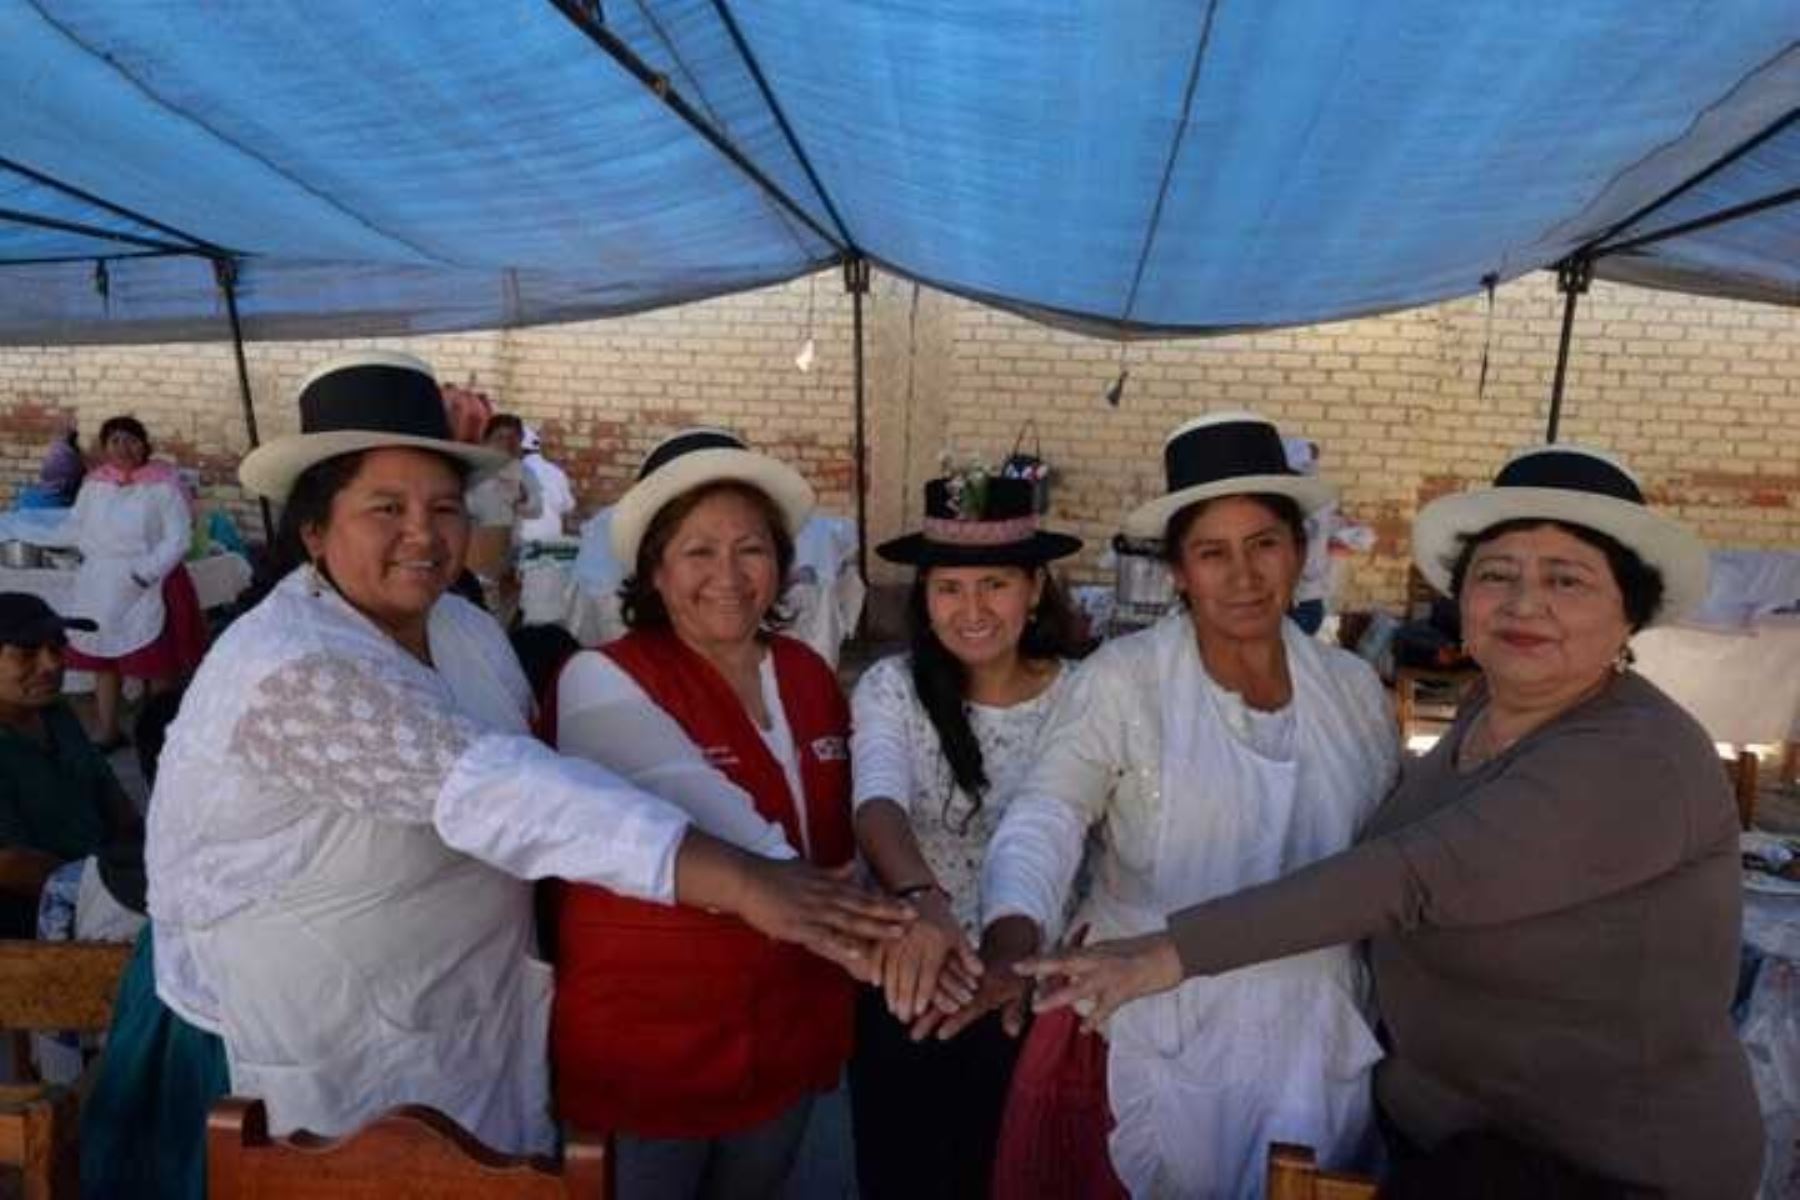 La ministra de la Mujer y Poblaciones Vulnerables, Ana María Choquehuanca, visitó la feria de comidas típicas organizada por mujeres y luego a la Asociación se Mujeres Artesanas desplazadas por la violencia política.